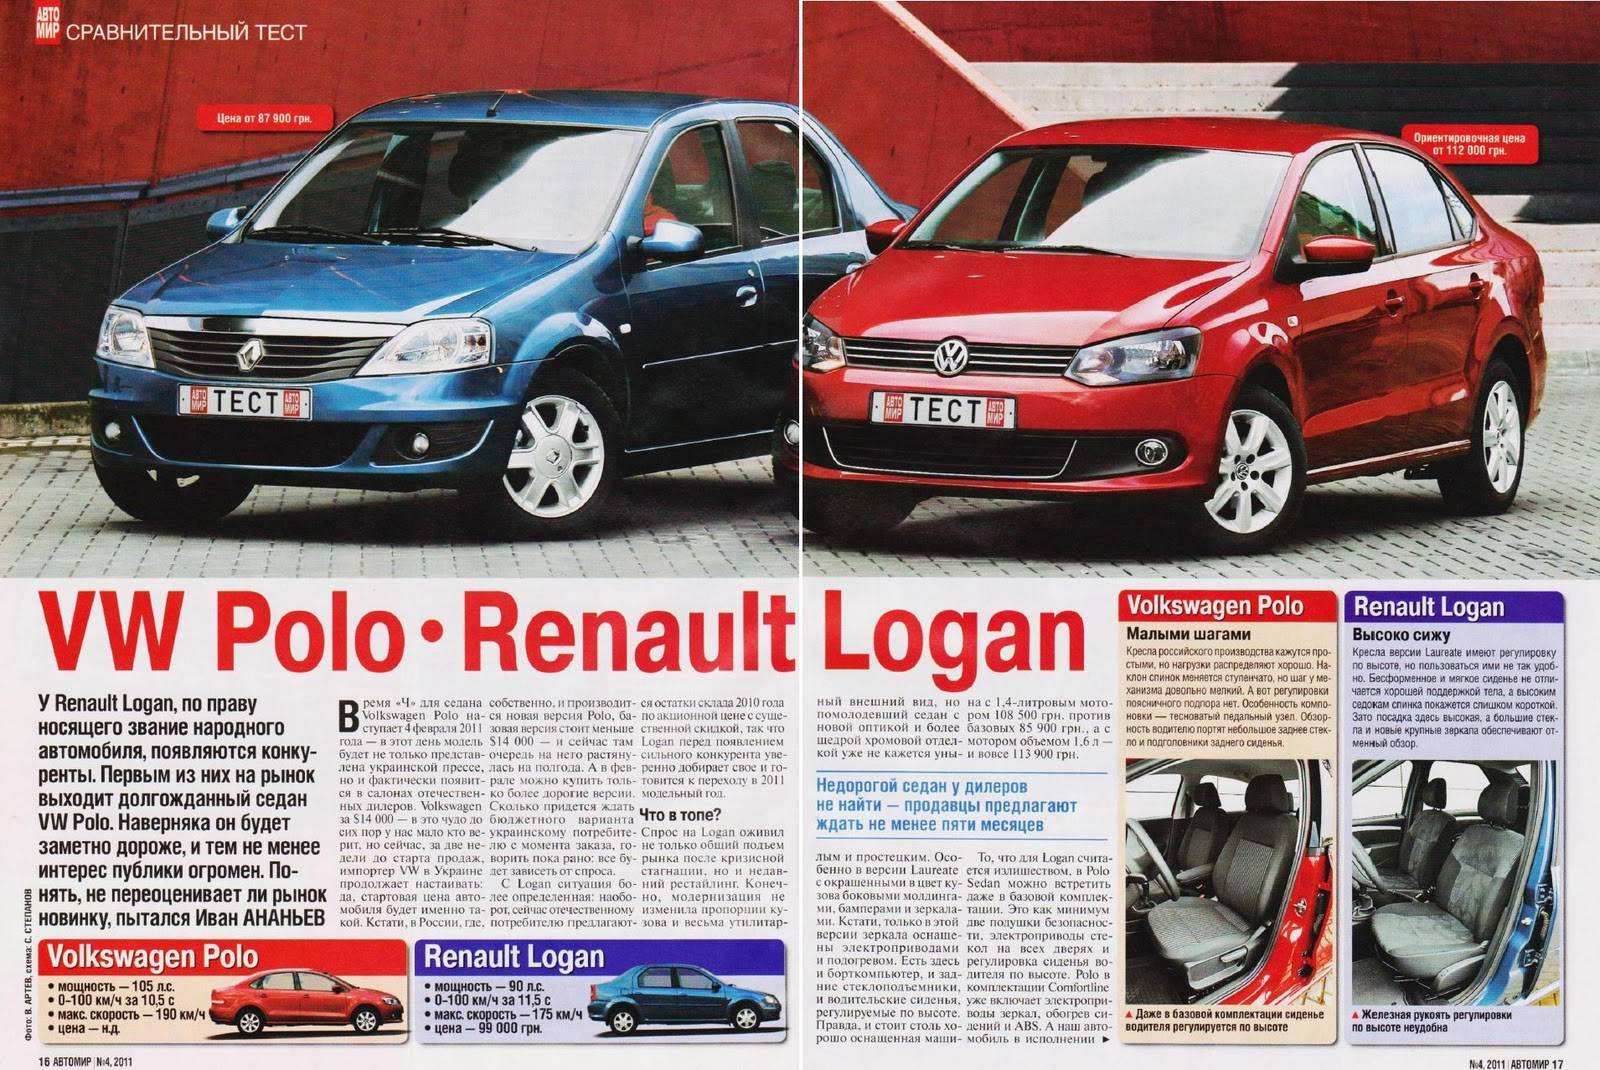 Renault — logan или sandero? сравнительный тест — журнал за рулем